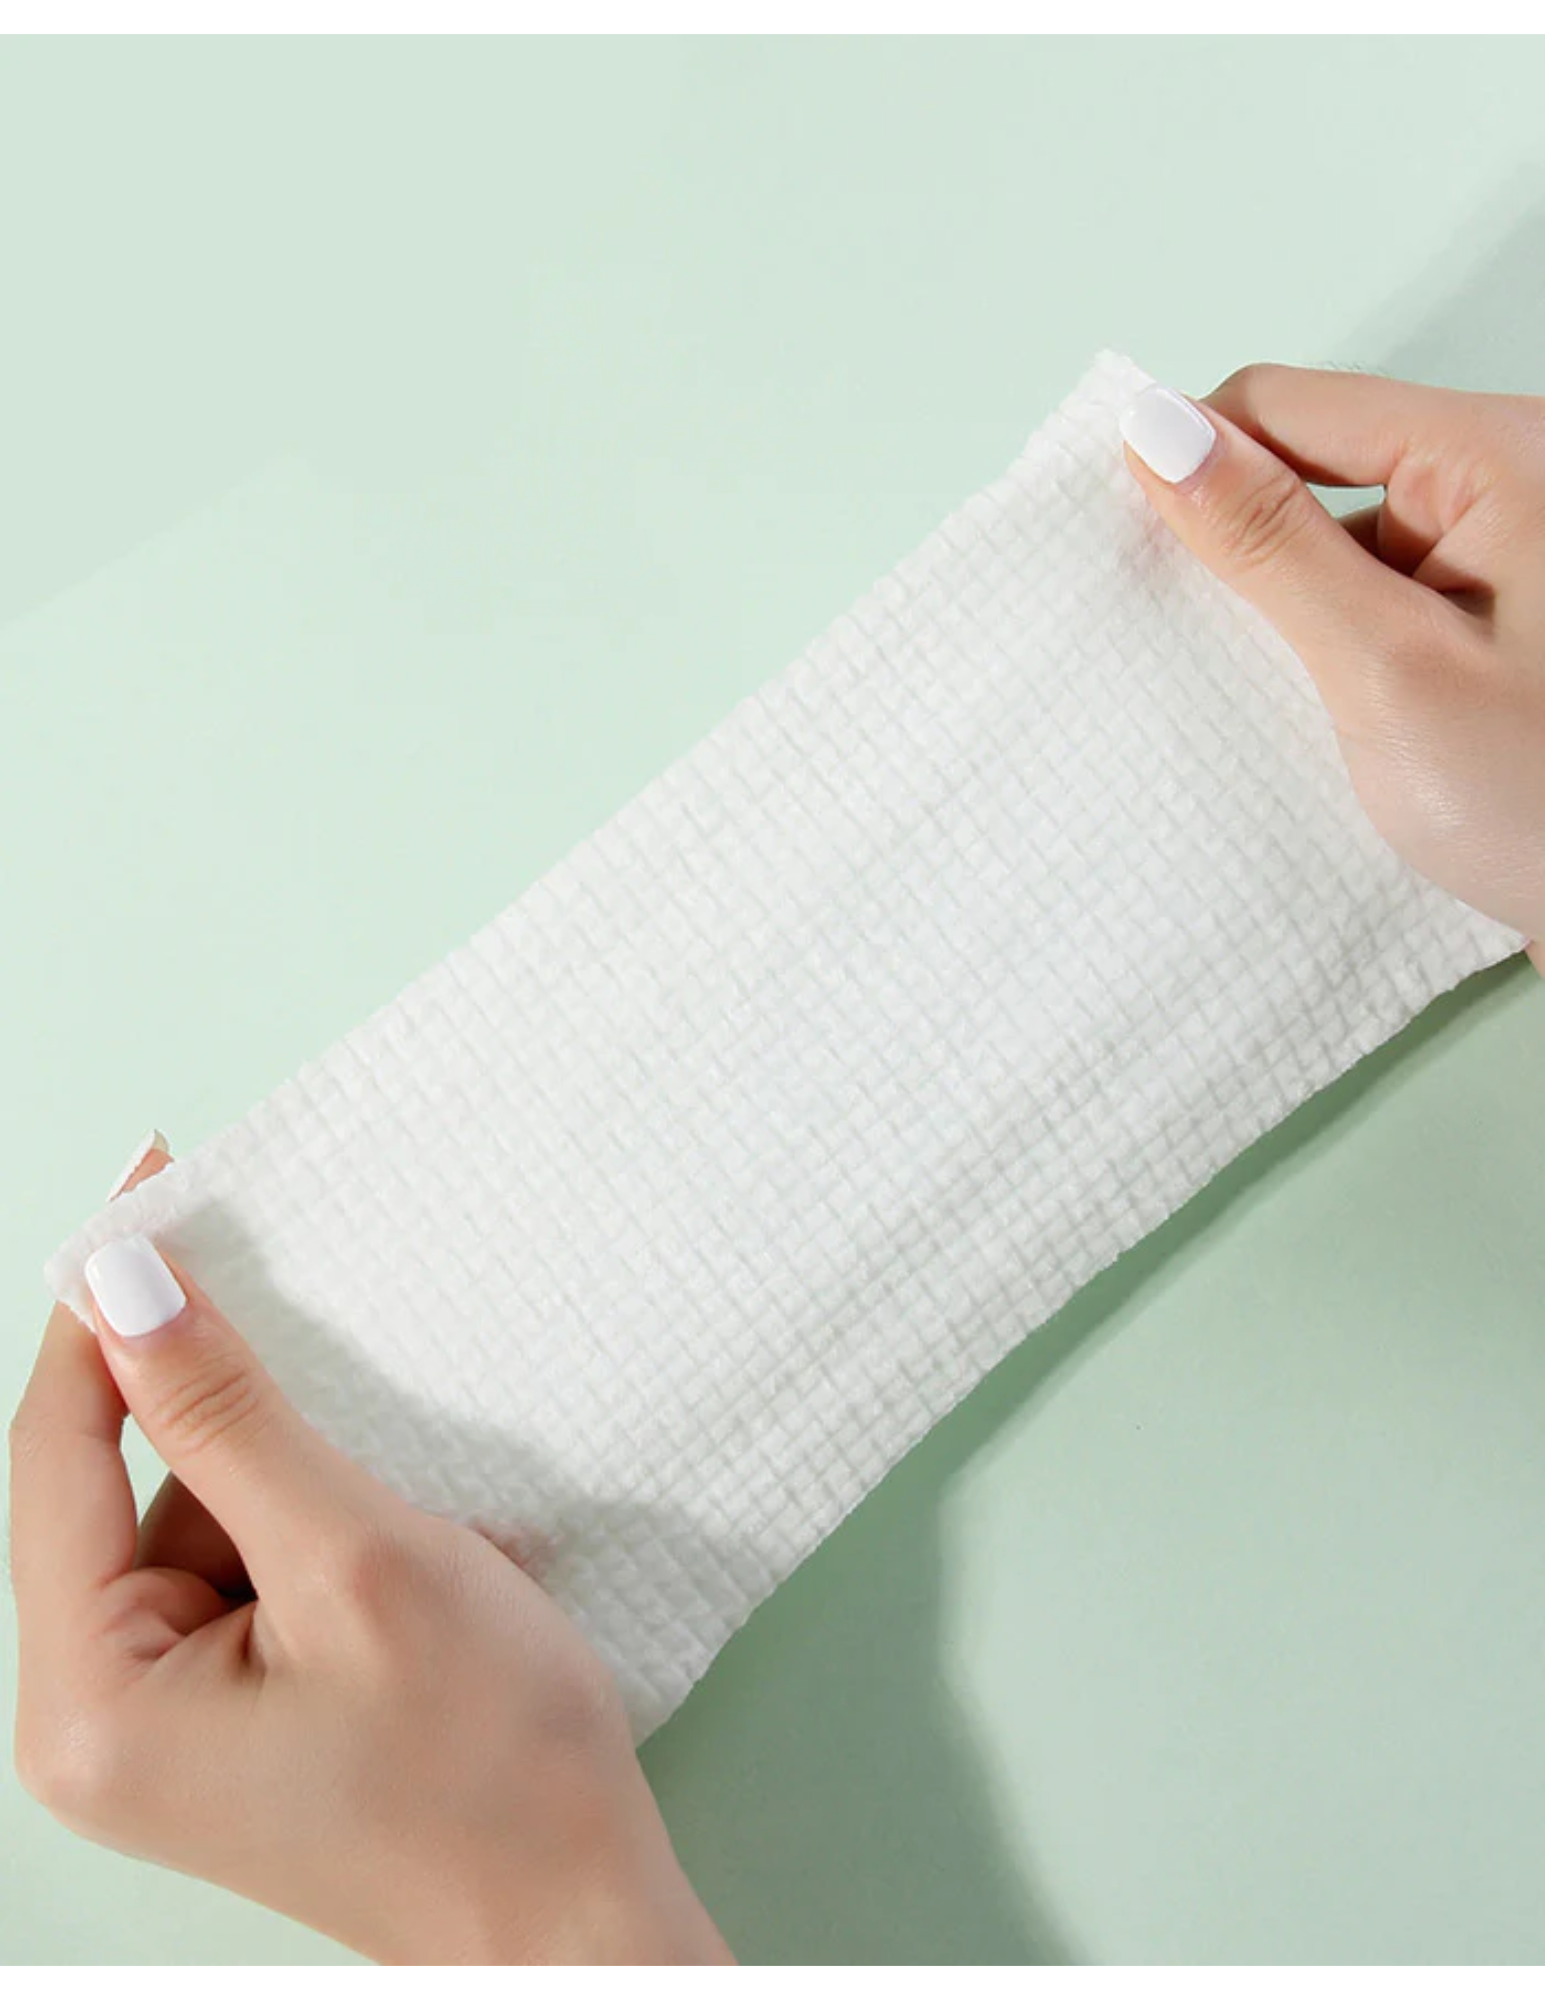 AMORTALS Cotton Towel